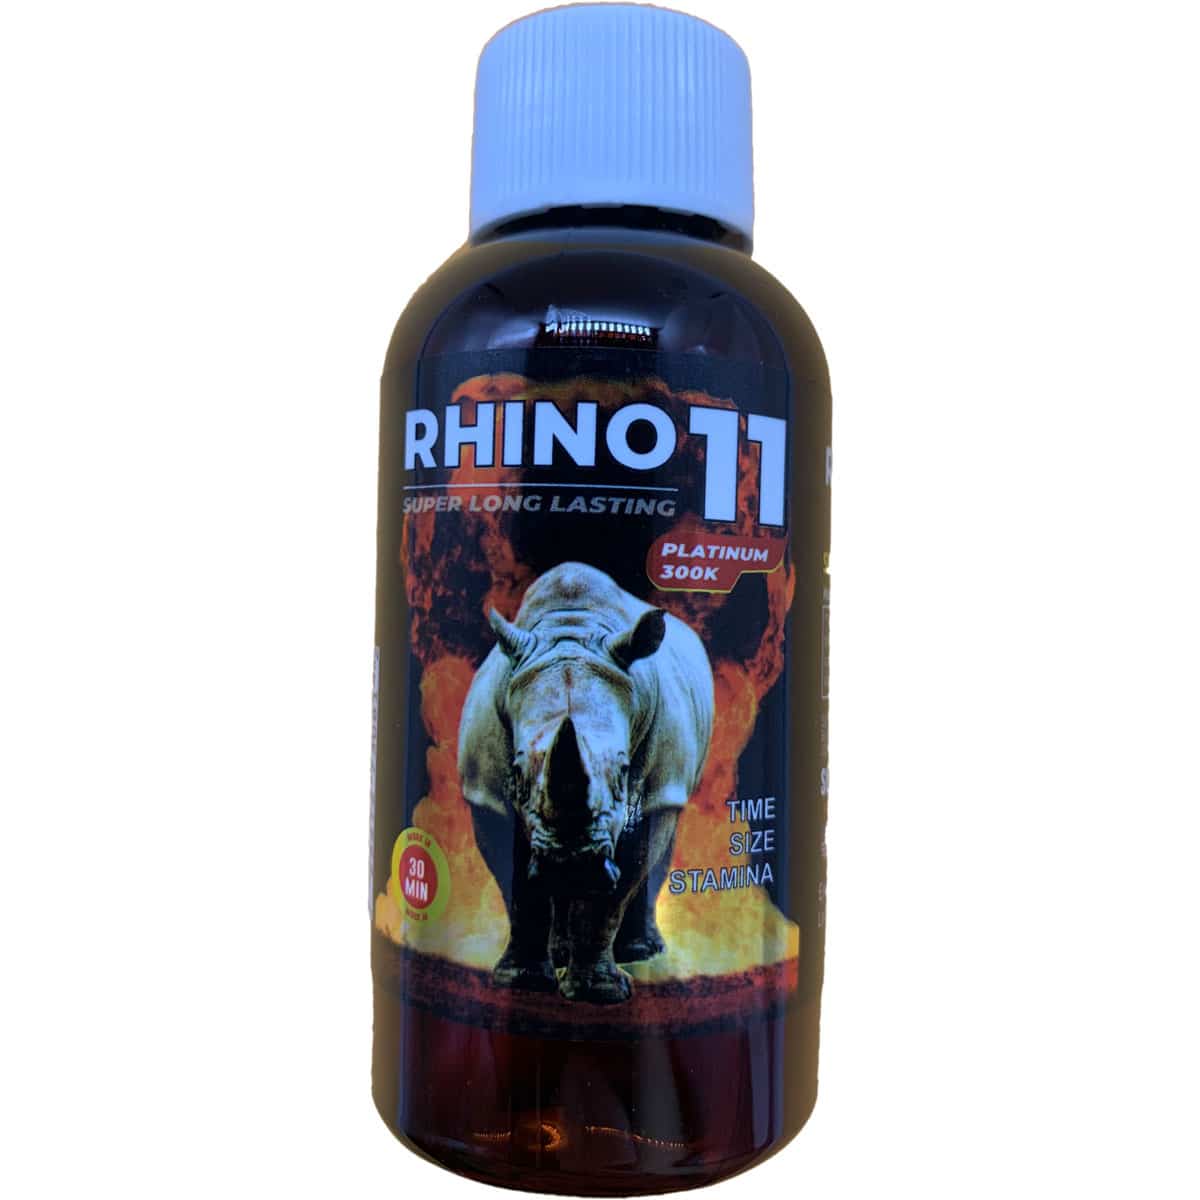 rhino 7 premium plus